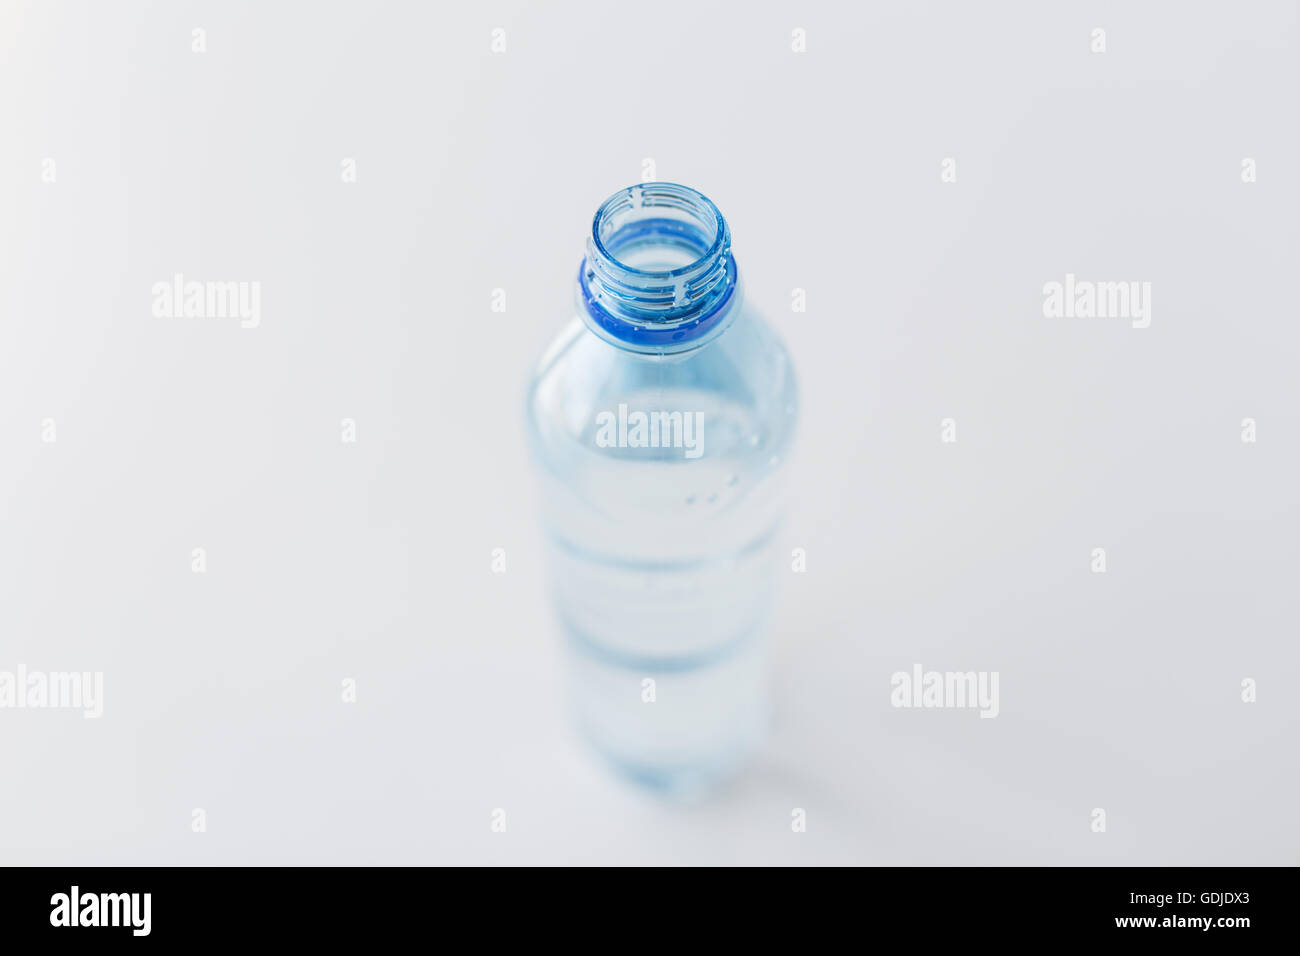 Pequeña Botella De Agua De Consumición Foto de archivo - Imagen de  embotellado, anuncie: 24710884